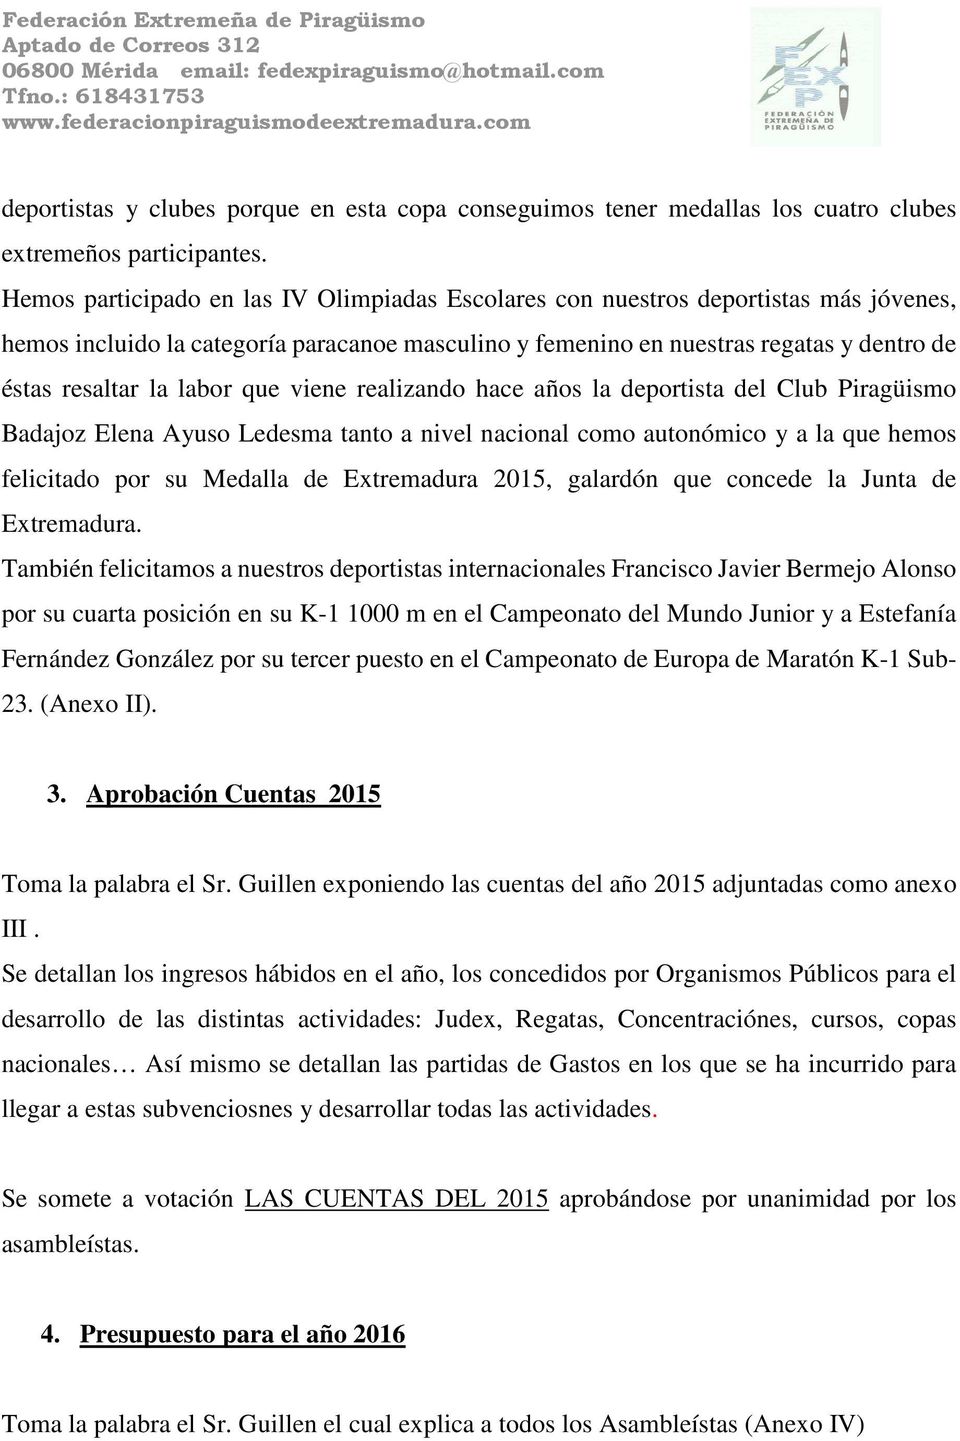 labor que viene realizando hace años la deportista del Club Piragüismo Badajoz Elena Ayuso Ledesma tanto a nivel nacional como autonómico y a la que hemos felicitado por su Medalla de Extremadura